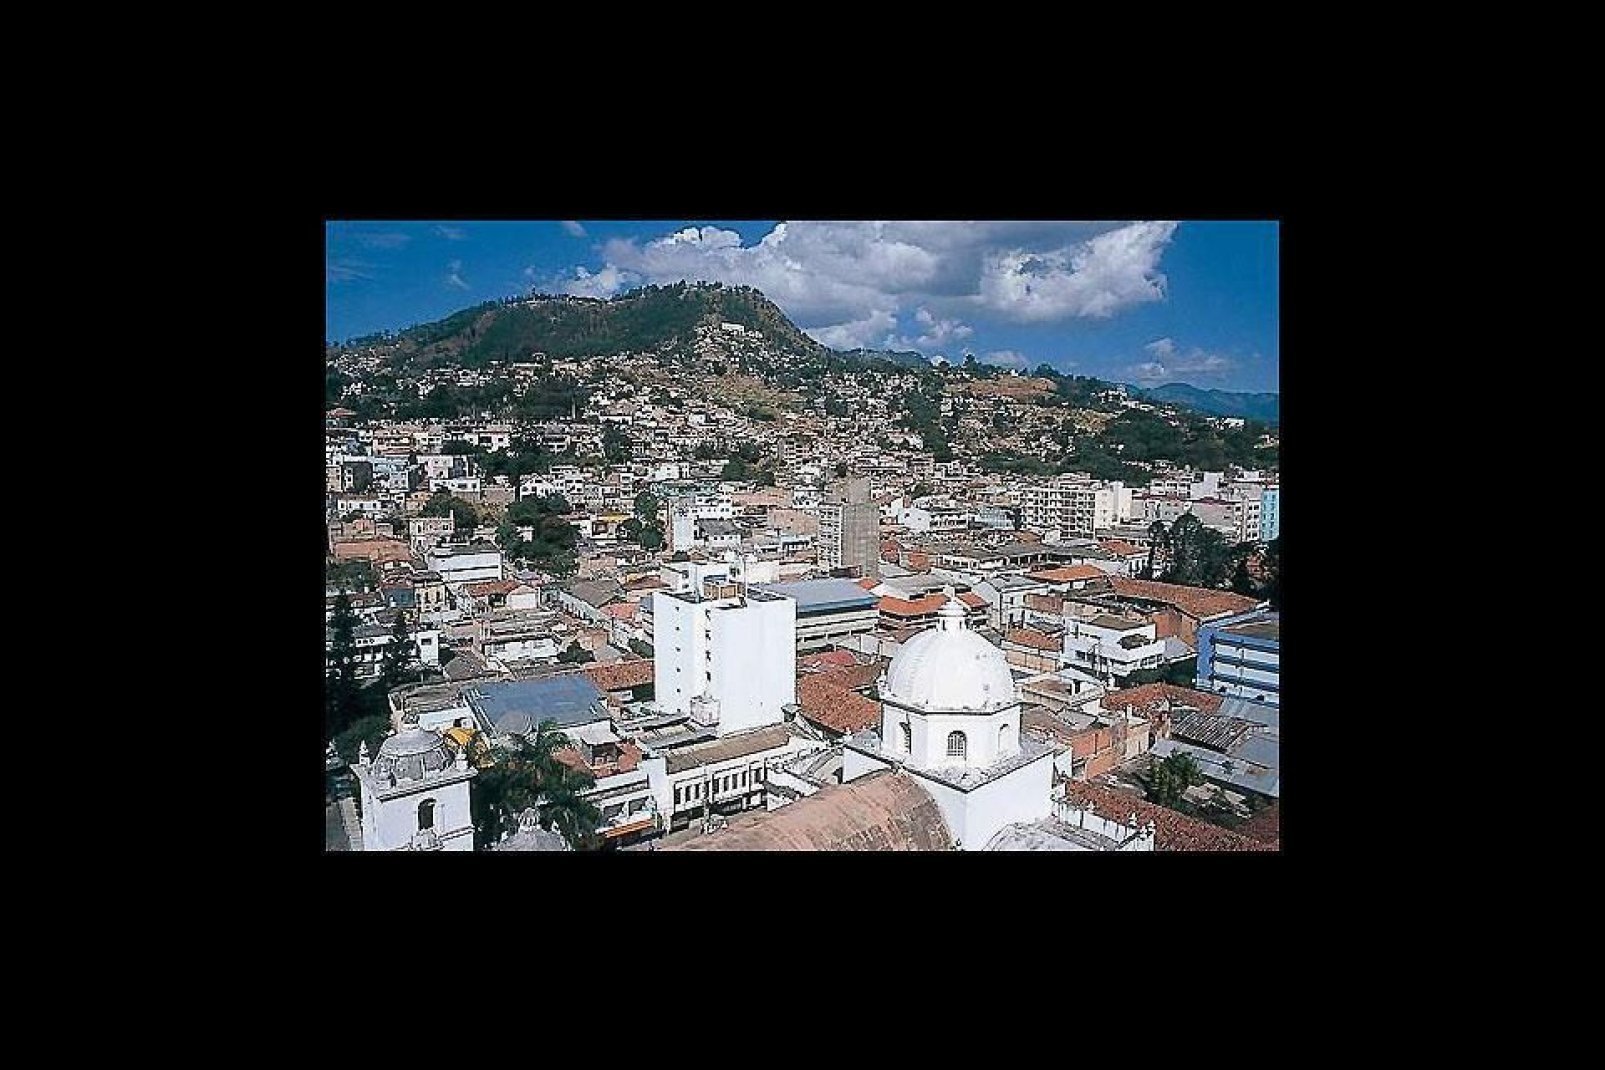 Tegucigalpa ist die Hauptstadt von Honduras. Die Stadt besitzt mit Ausnahme des kleinen historischen Zentrums keine nennenswerten Sehenswürdigkeiten.